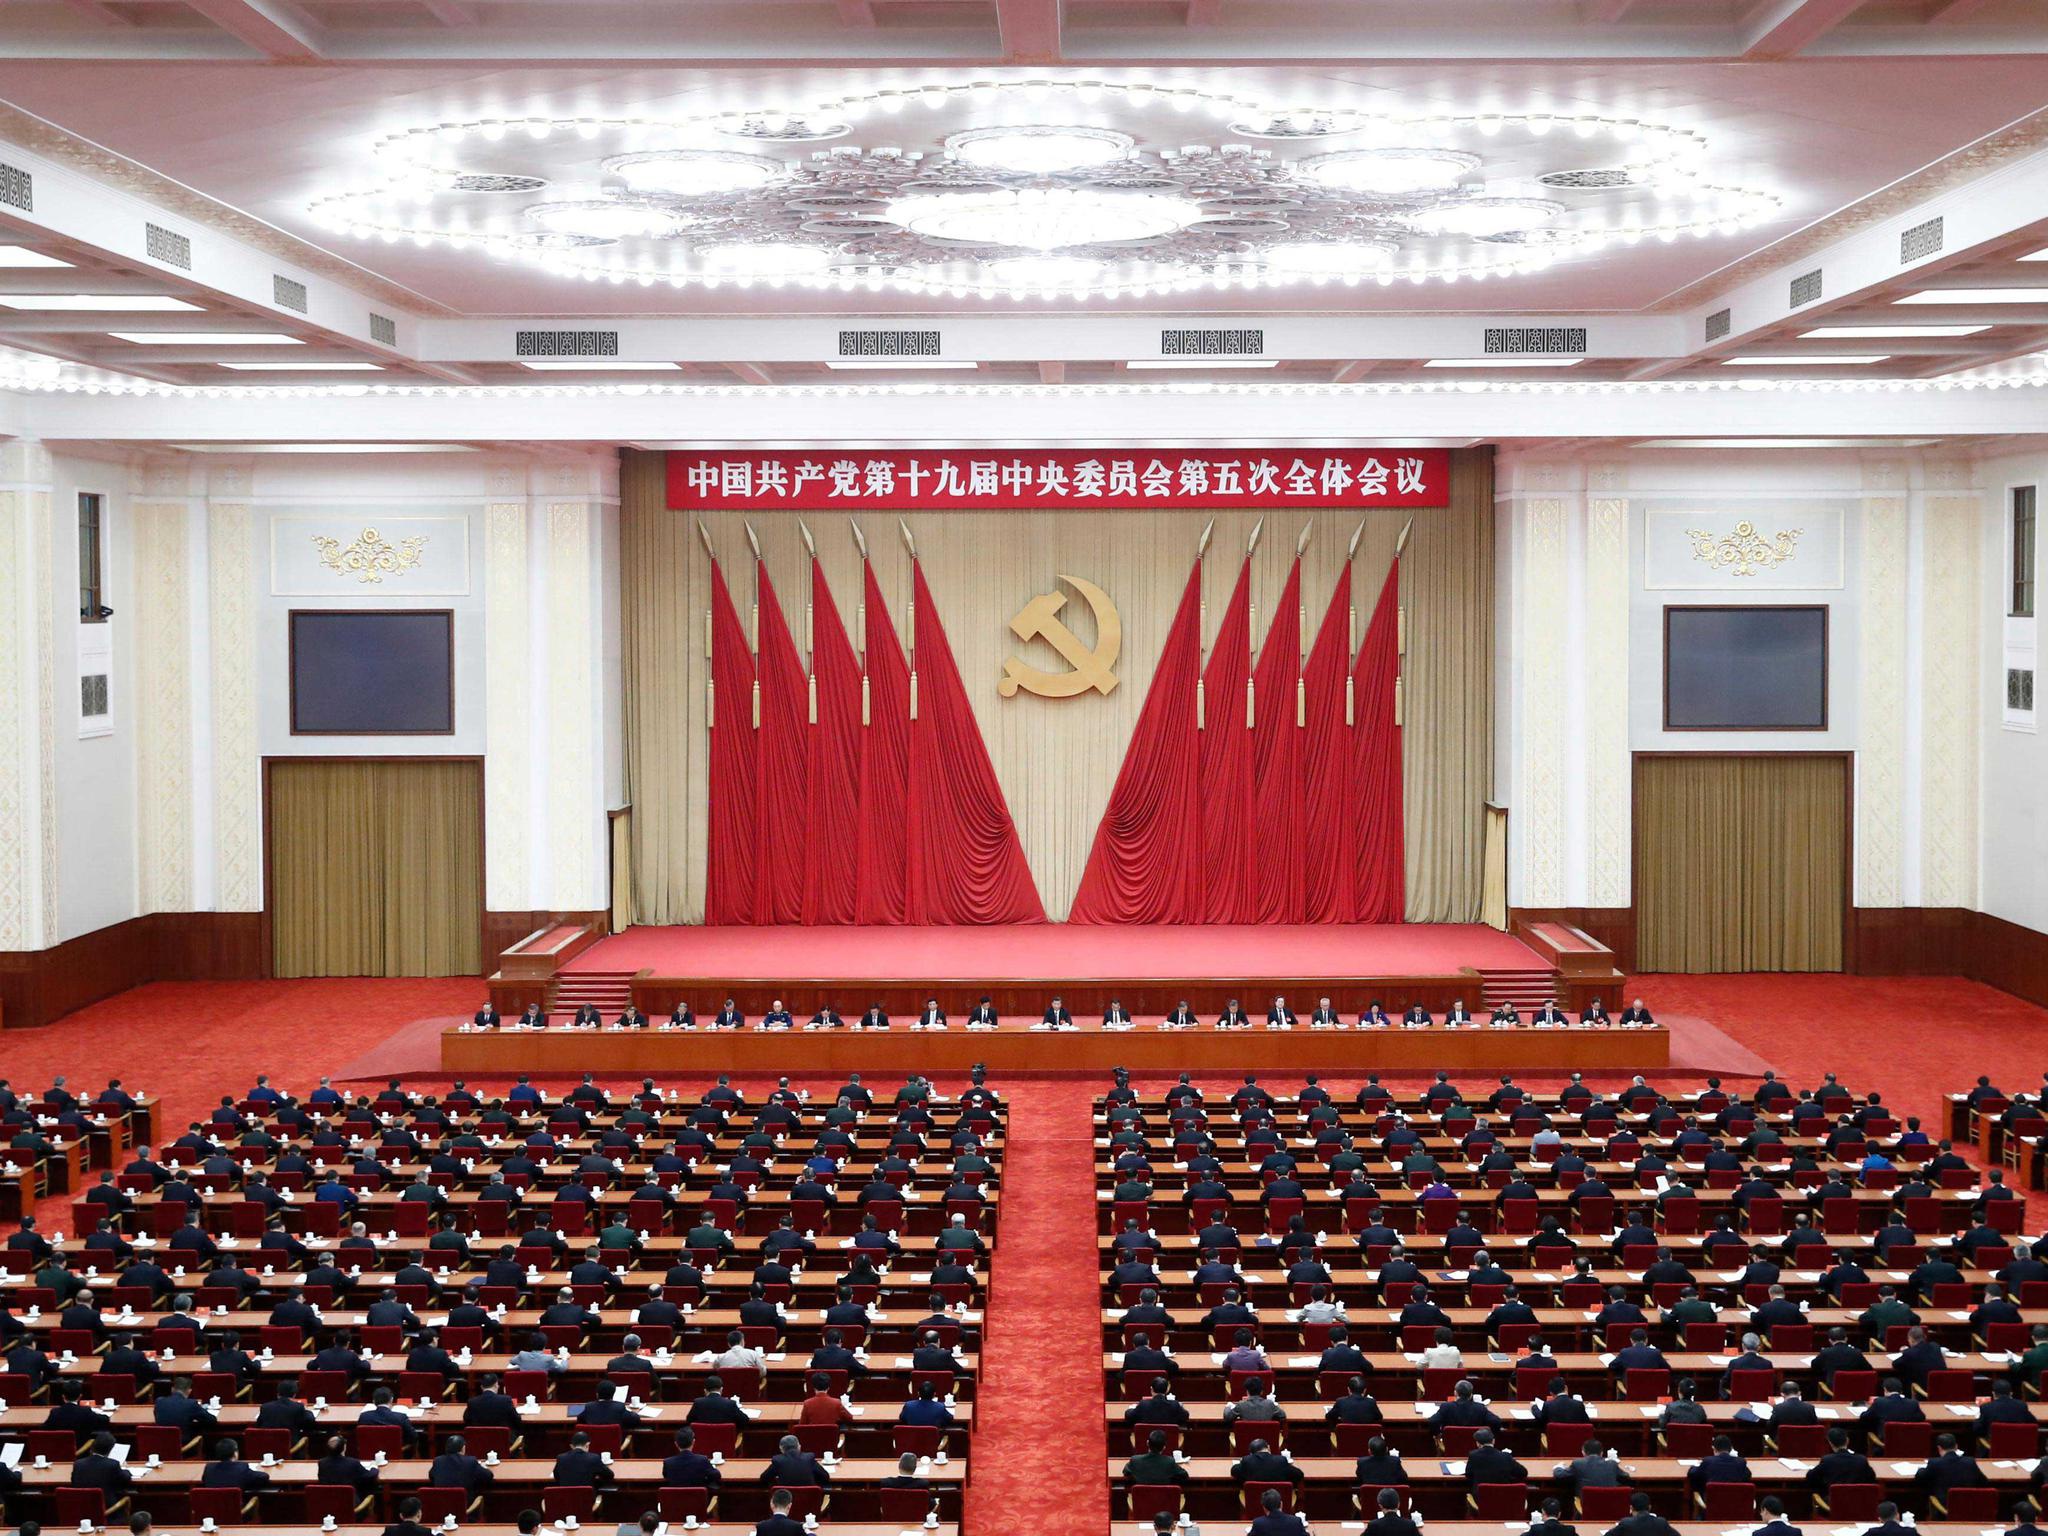 中国共产党第十九届中央委员会第五次全体会议，于2020年10月26日至29日在北京举行。